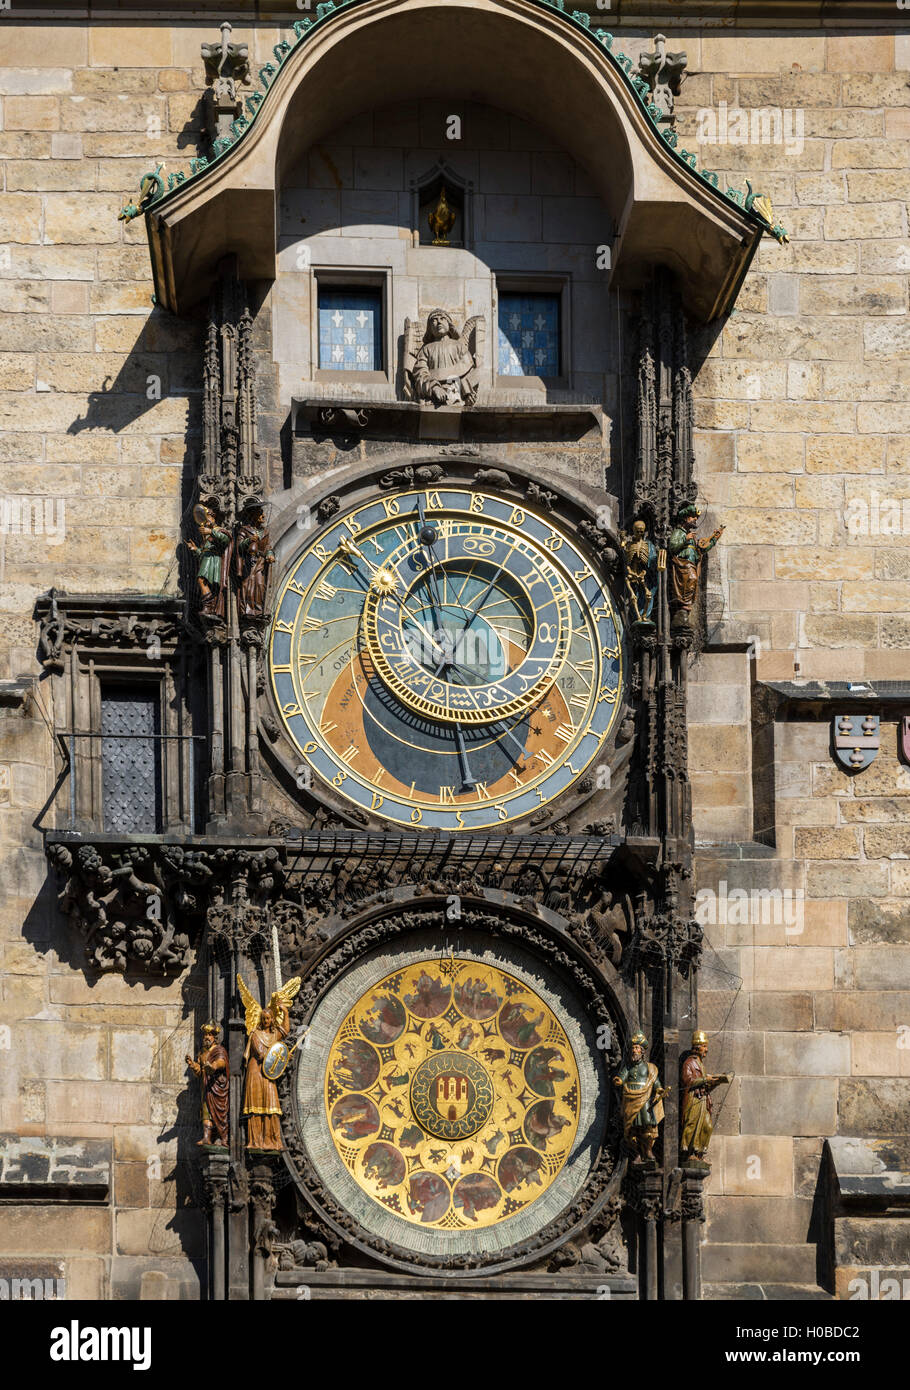 The historic Astronomical Clock in Old Town Square (Staroměstské náměstí), Prague, Czech Republic Stock Photo